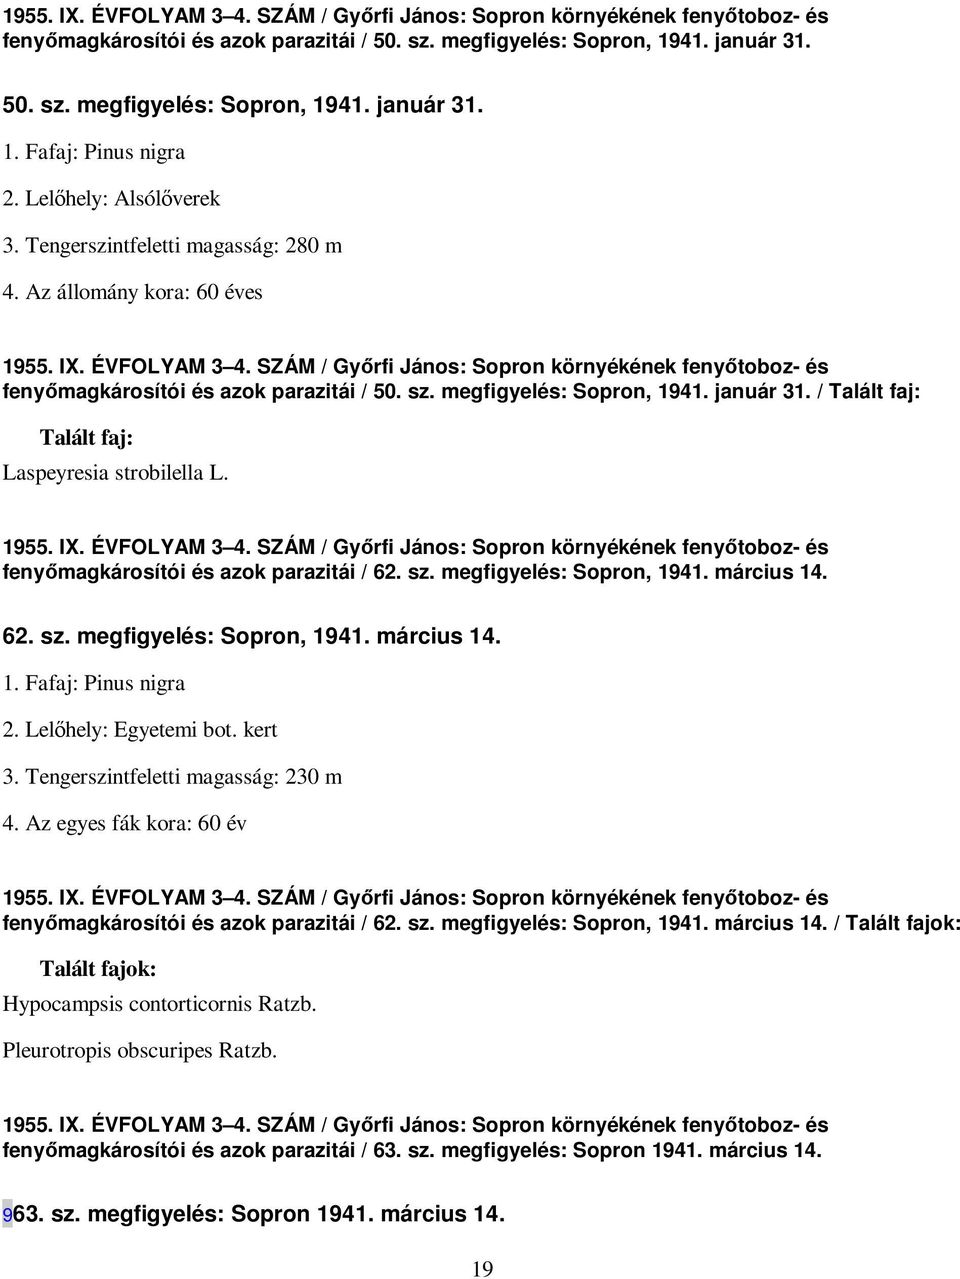 SZÁM / Gyırfi János: Sopron környékének fenyıtoboz- és fenyımagkárosítói és azok parazitái / 50. sz. megfigyelés: Sopron, 1941. január 31. / Talált faj: Talált faj: Laspeyresia strobilella L. 1955.